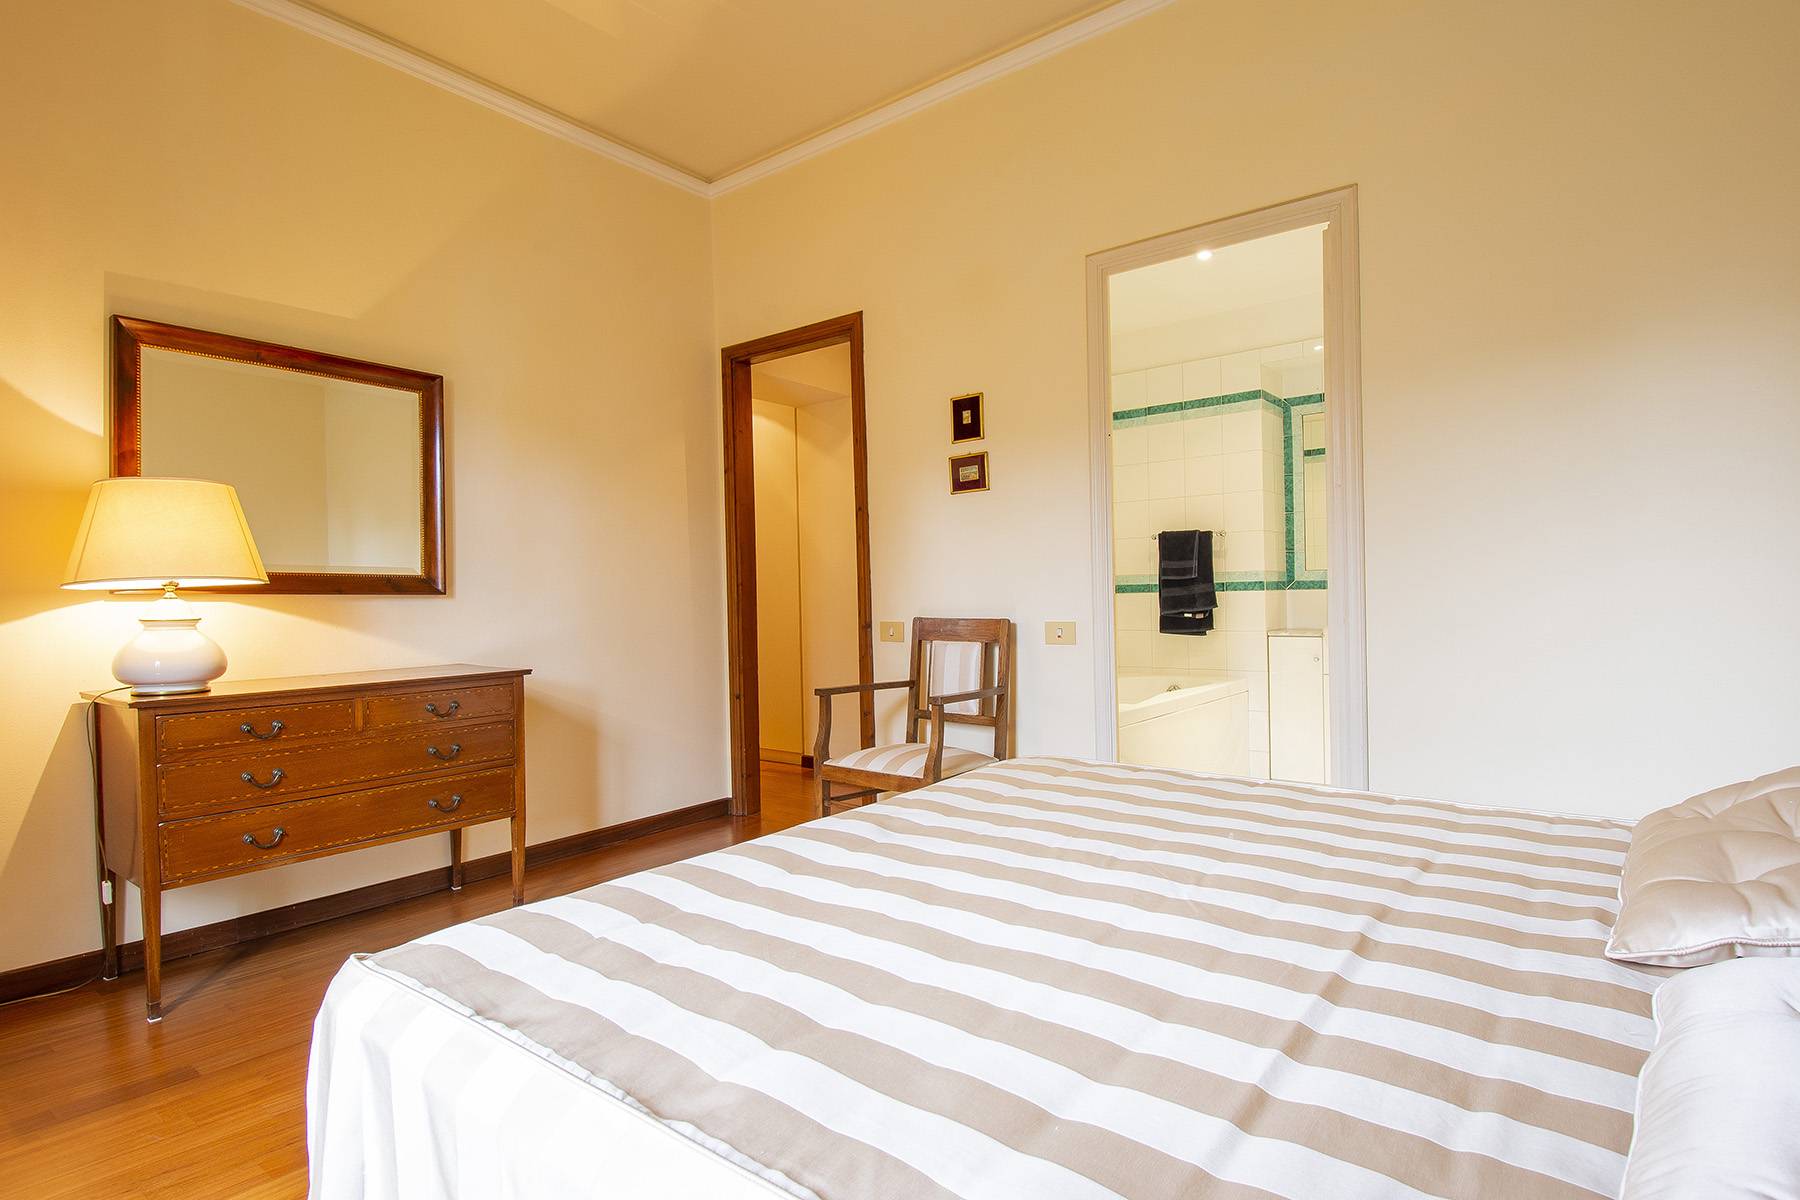 Appartamento in Vendita a Firenze: 5 locali, 220 mq - Foto 15